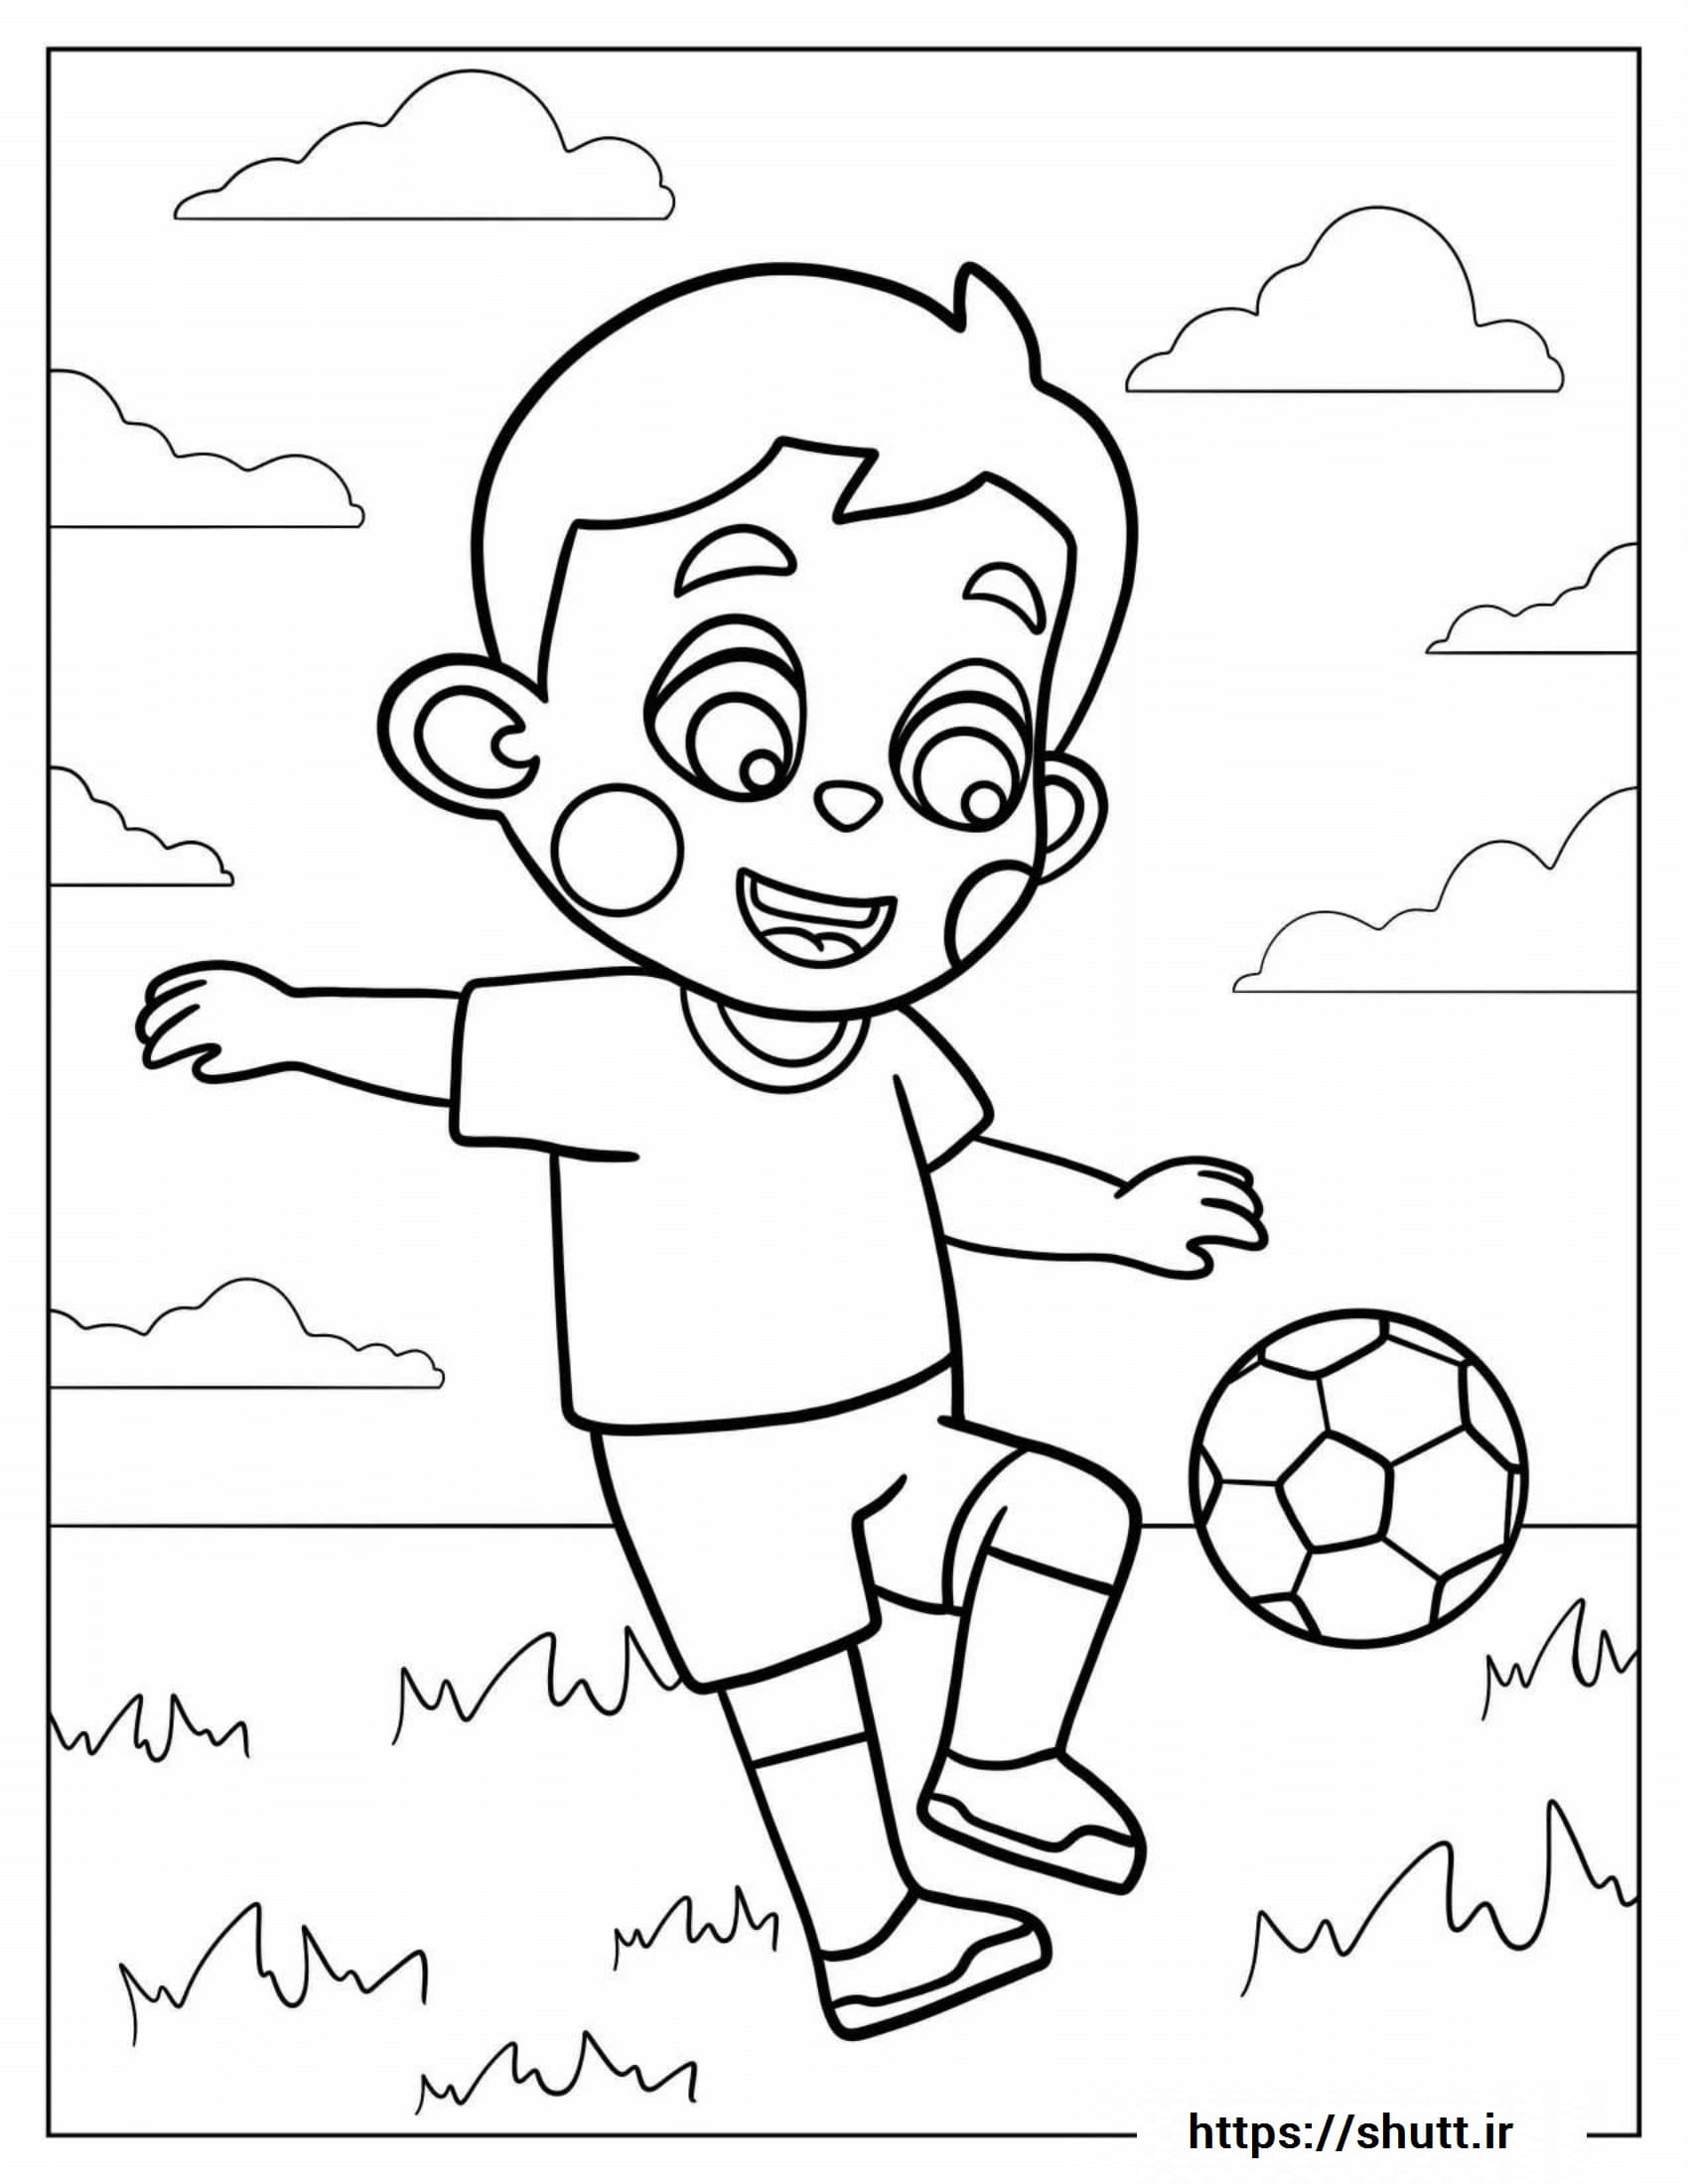 رنگ آمیزی نقاشی پسر فوتبالیست